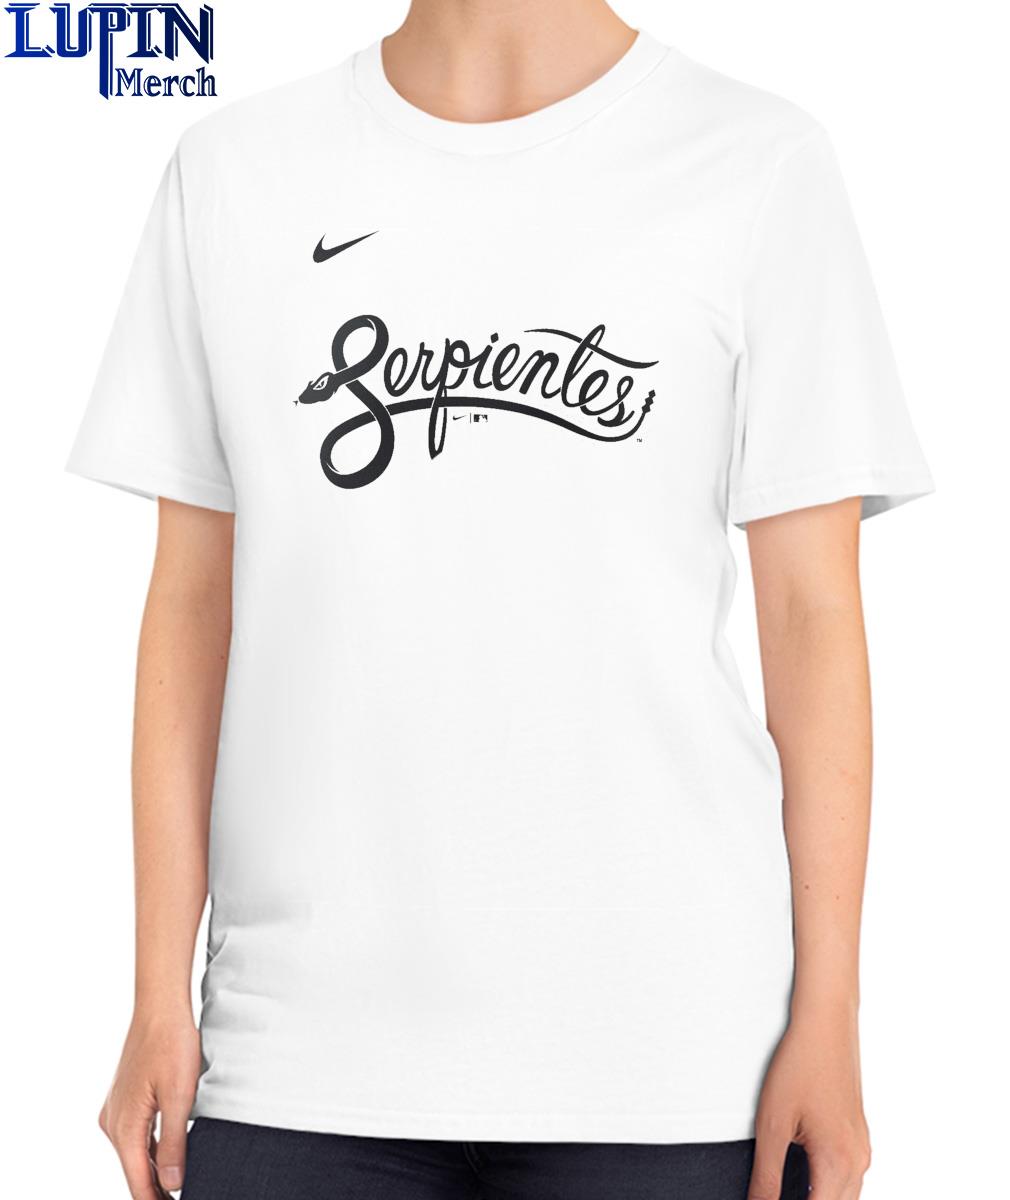 Arizona Diamondbacks Nike Serpientes Shirt